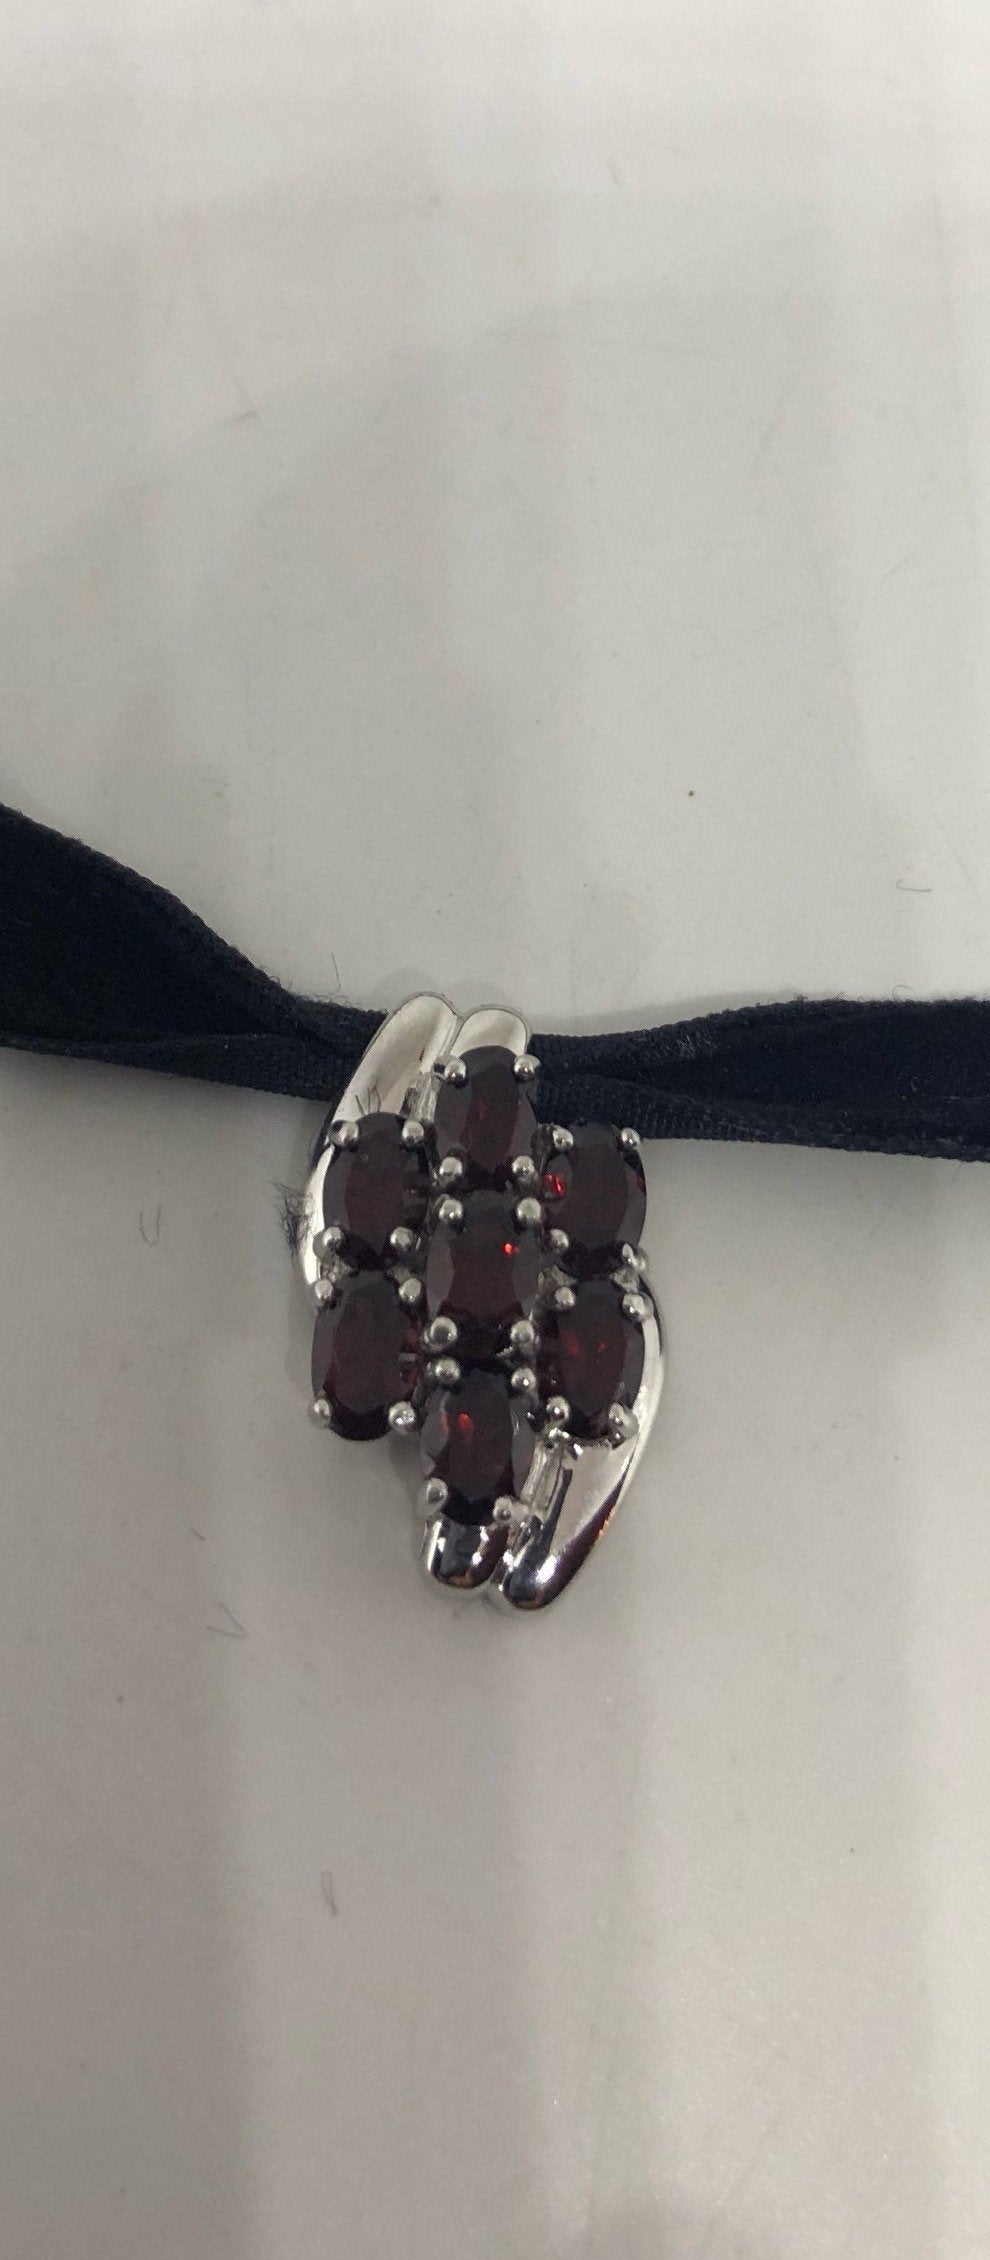 Vintage 925 Sterling Silver Red Garnet Choker Pendant Necklace